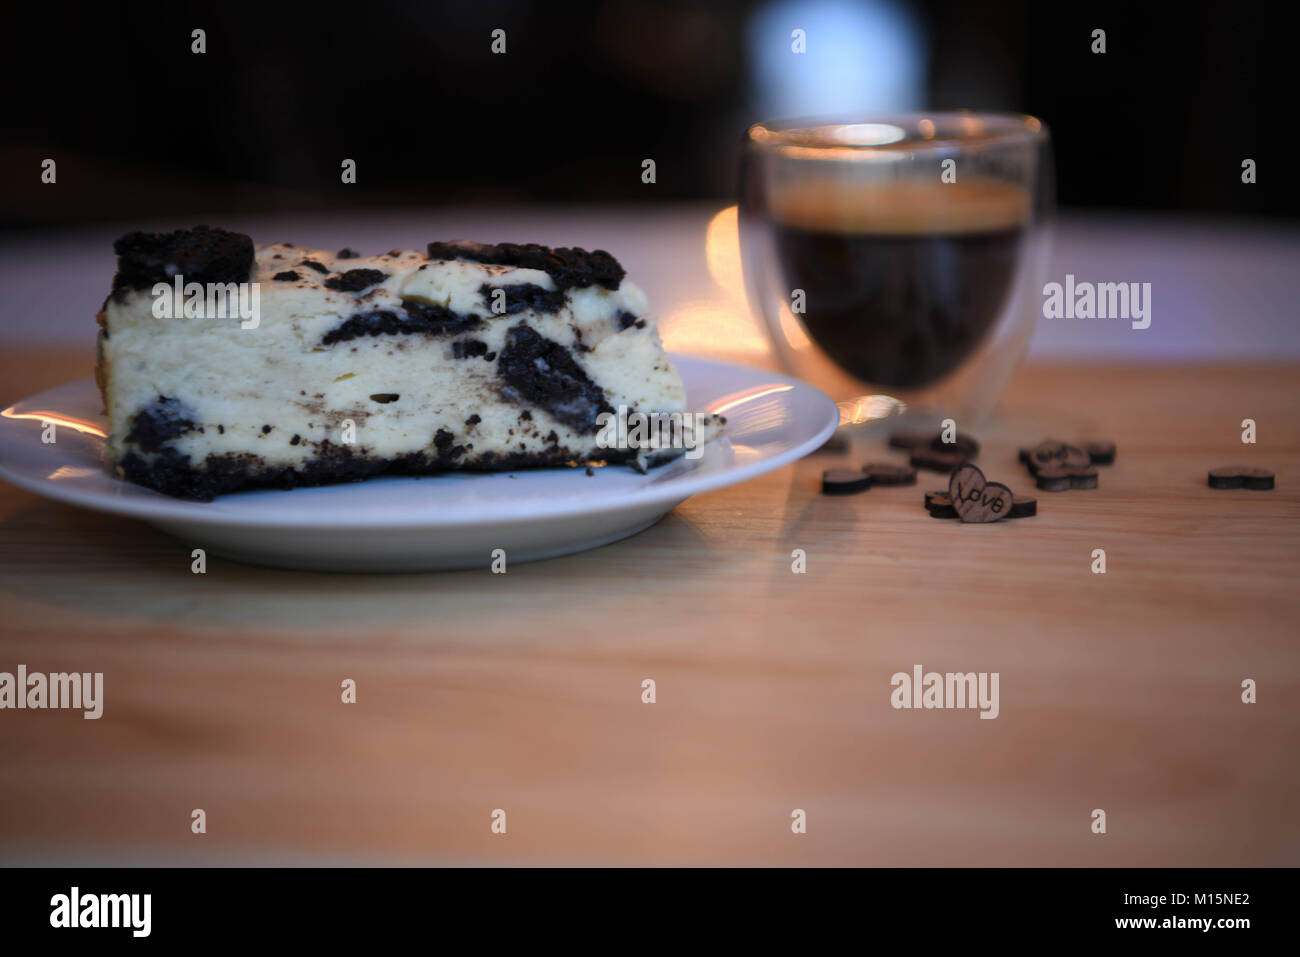 Cibi fatti in casa di biscotti al cioccolato cheesecake con amore in legno cuore decorazioni e illuminazione con una bevanda calda del caffè espresso in background Foto Stock